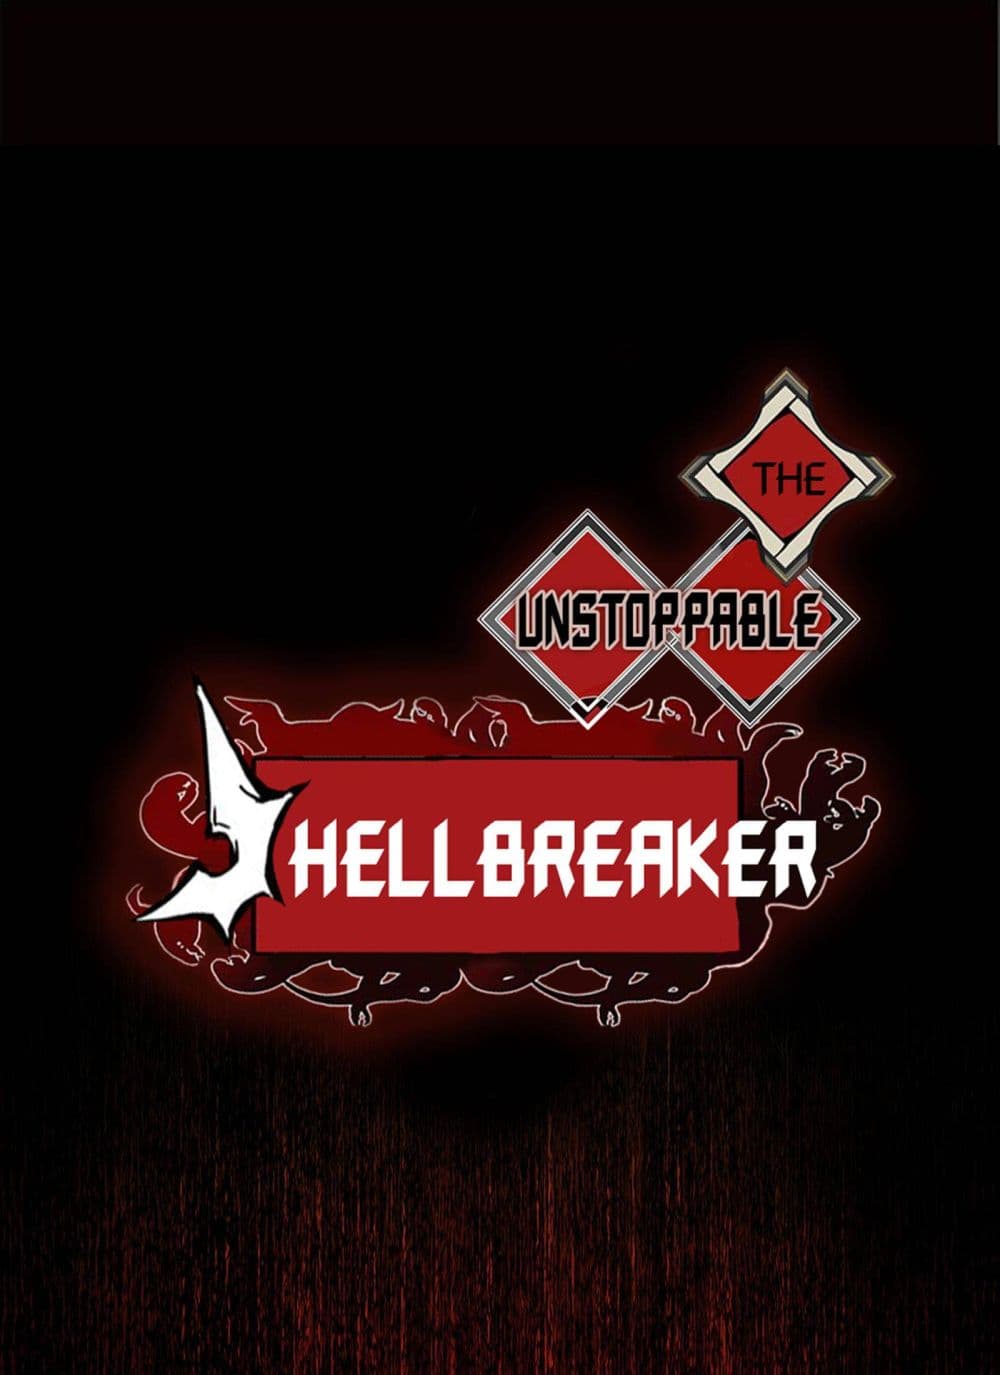 The Unstoppable Hellbreaker 30-30